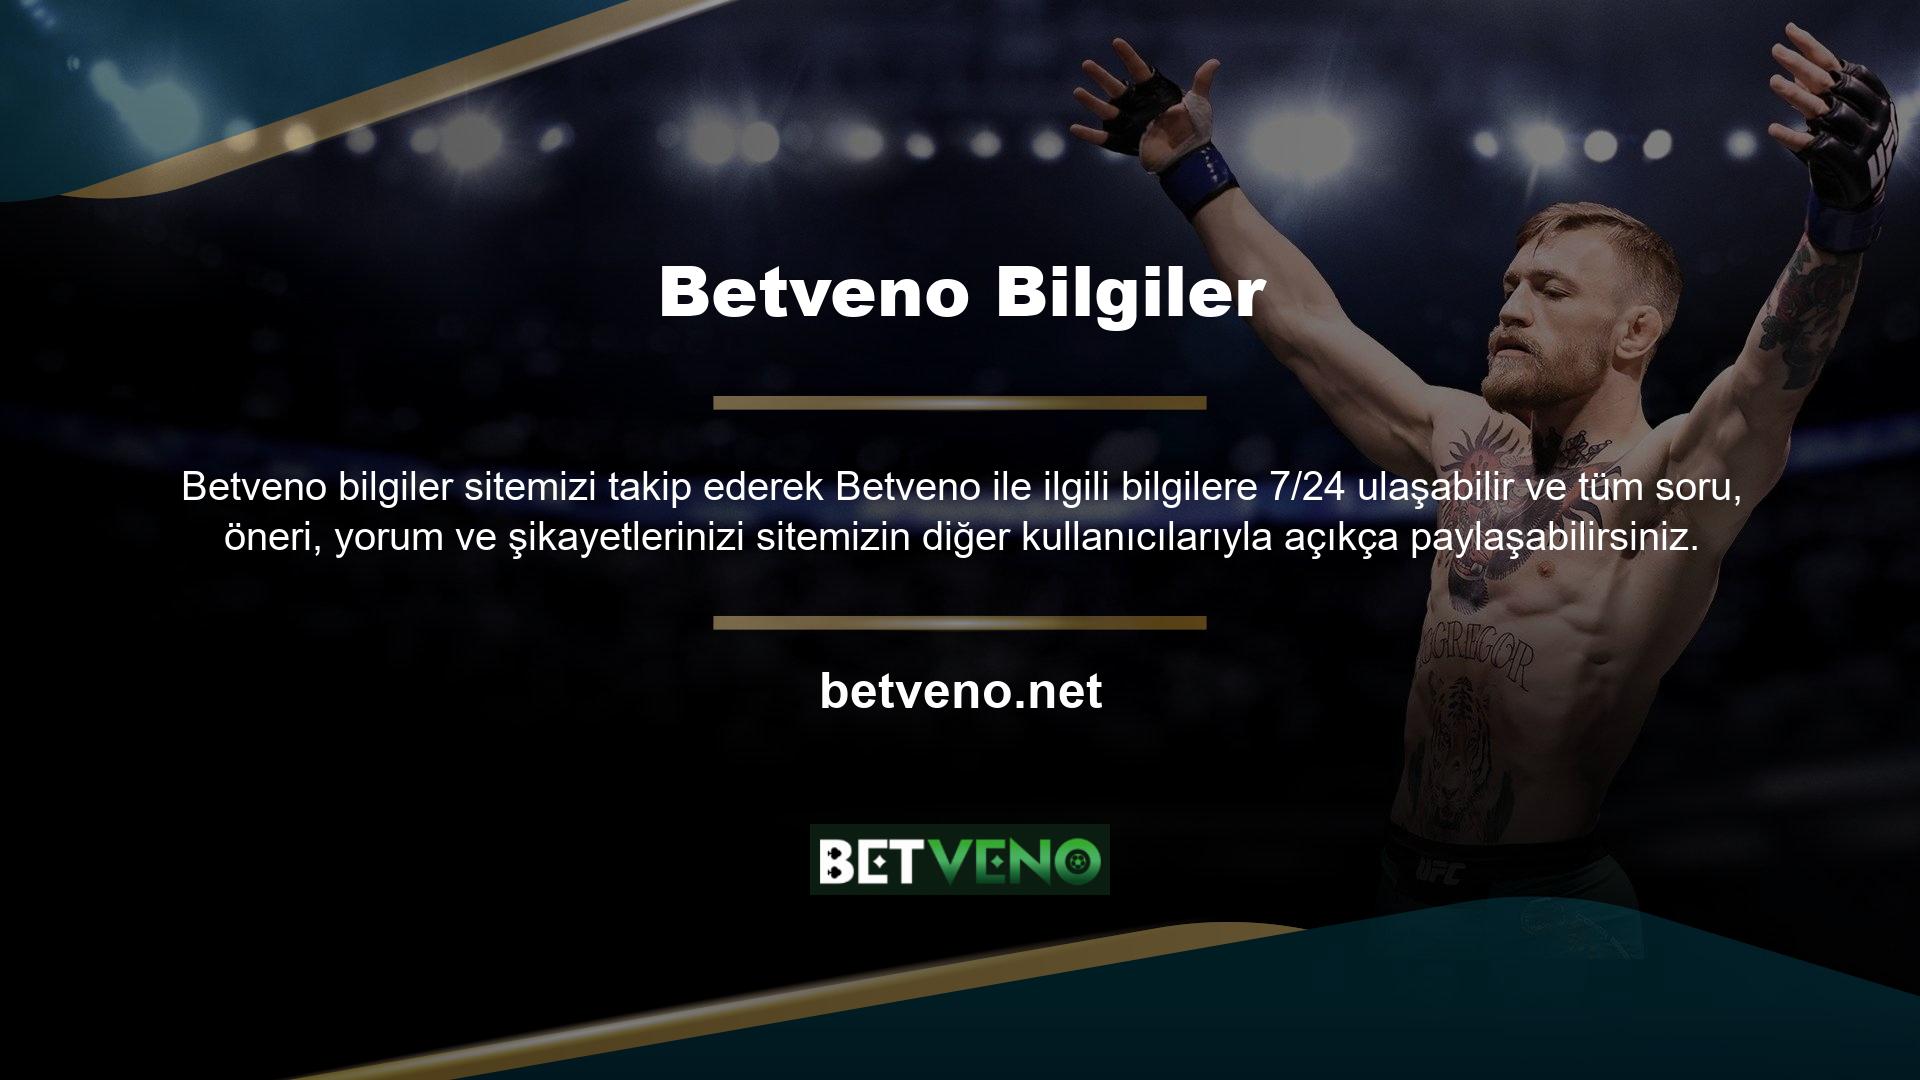 Betveno 7/24 destek sunan bahis ve casino sitelerinden biridir